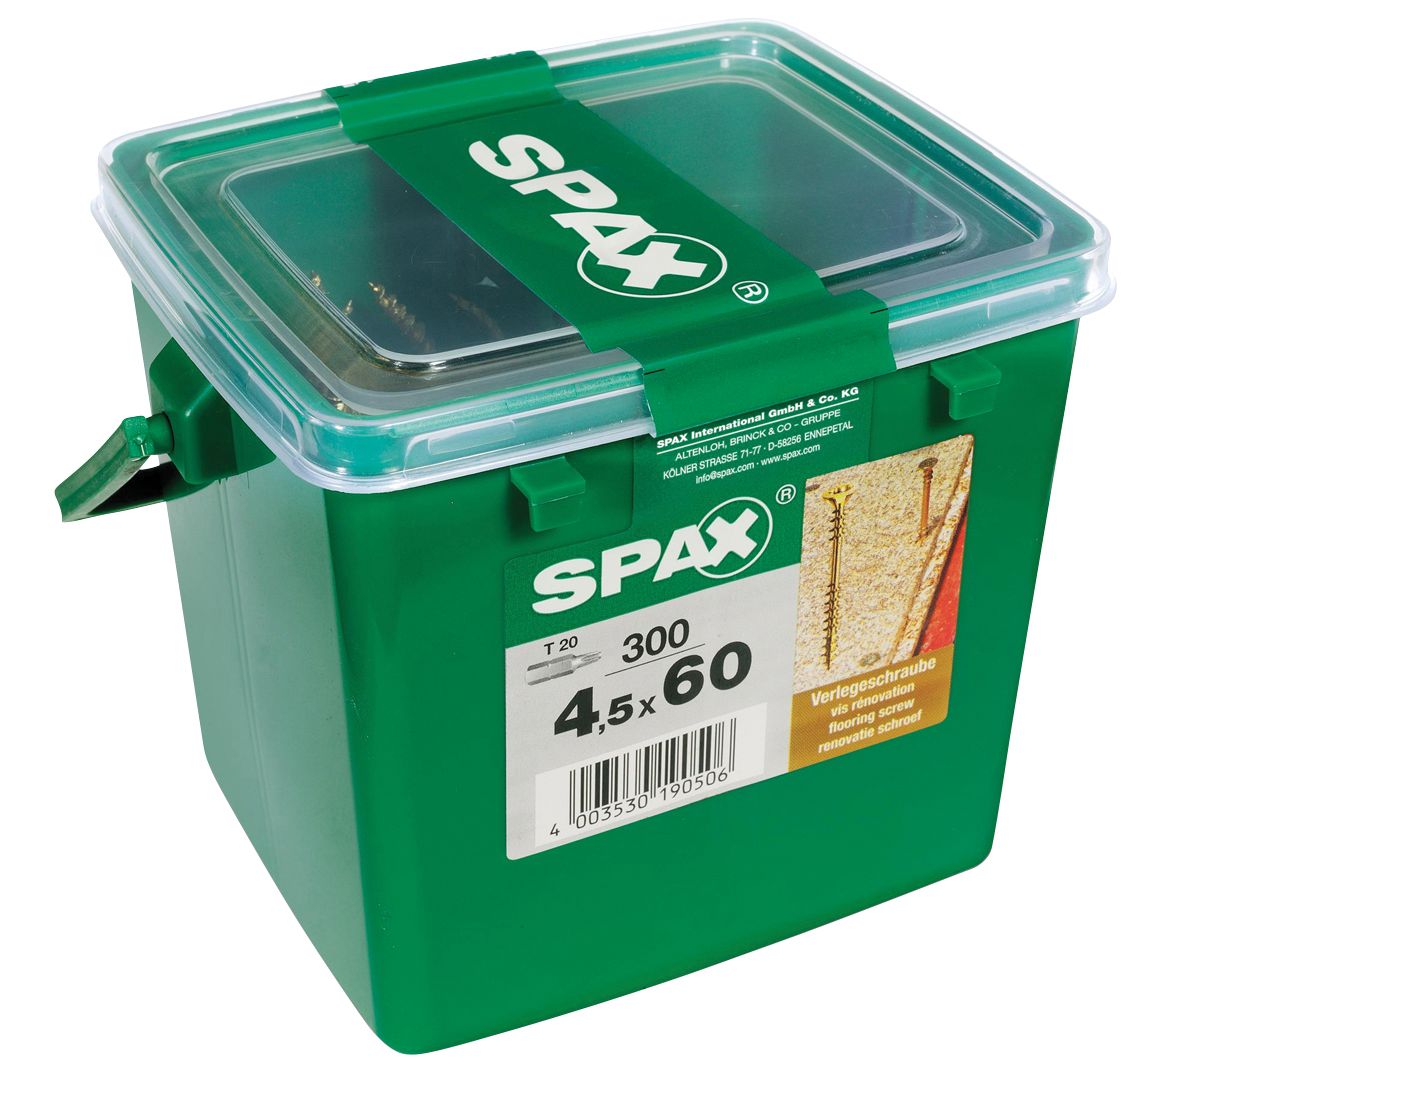 Image of Spax Chipboard Flooring Screws - 4.5 x 60mm Pack of 300